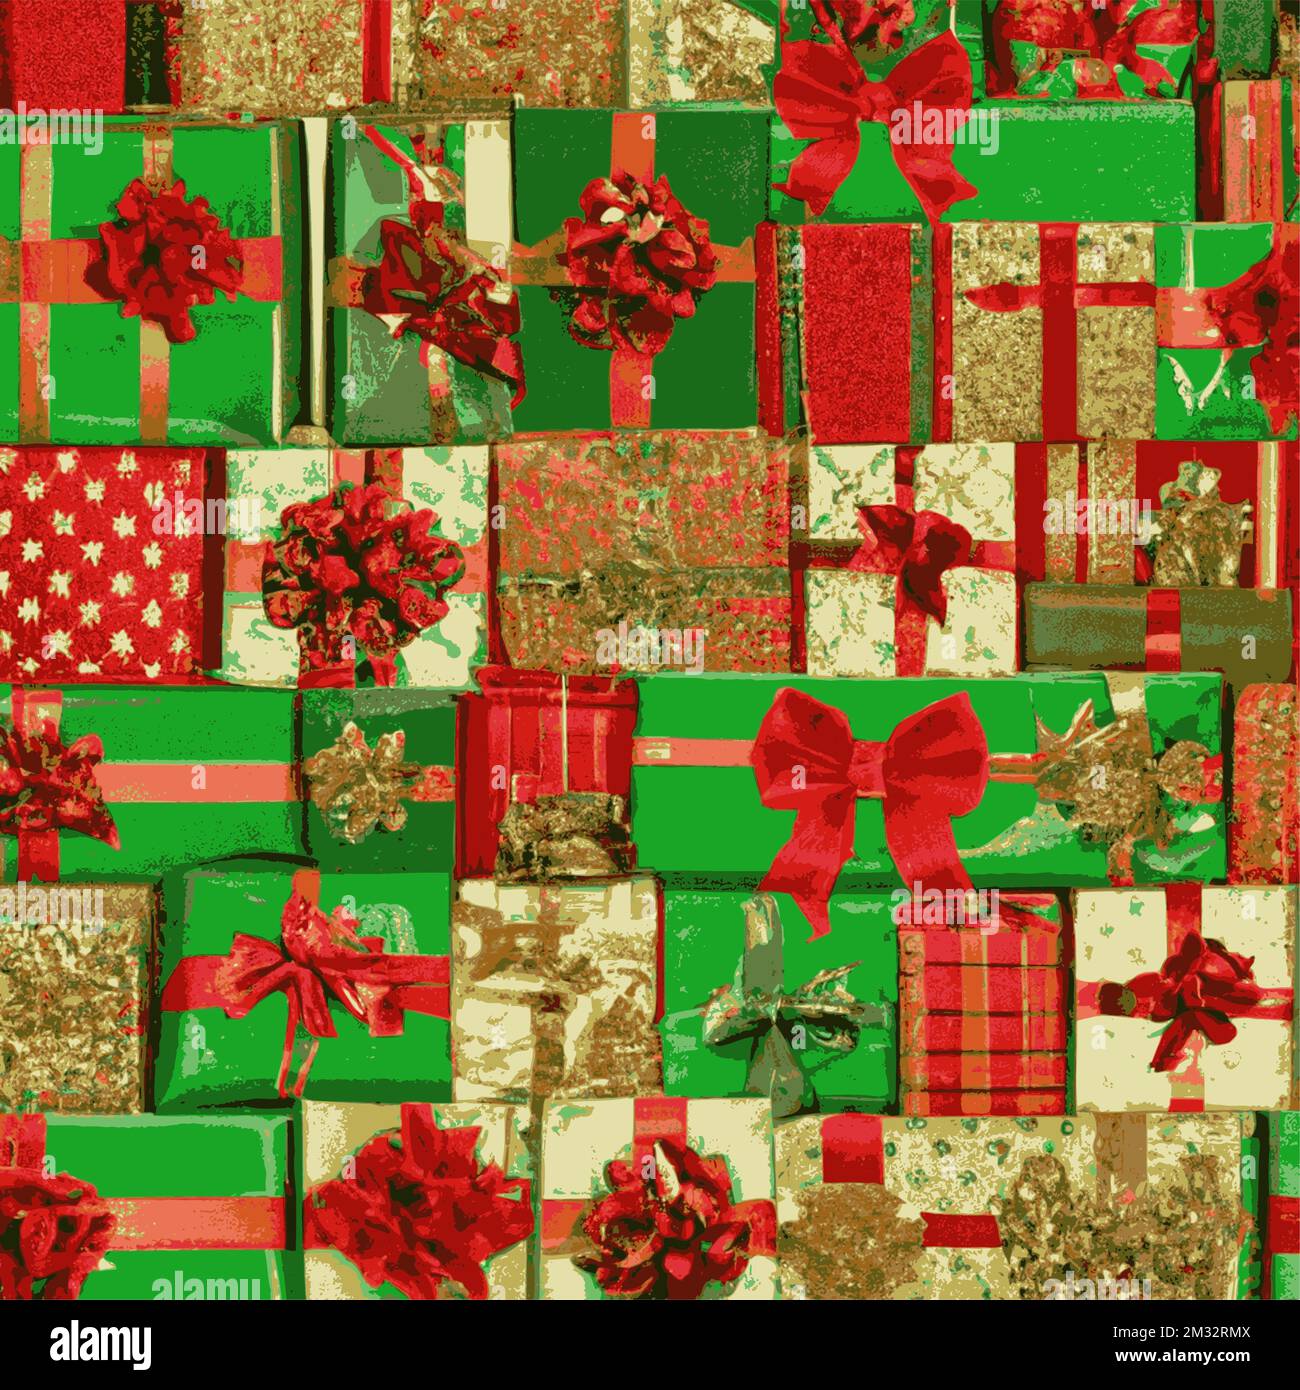 Weihnachtsgeschenkpakete, verpackte grüne Boxen, mit goldenen Bändern und roten Schleifen. Hintergrund mit farbenfroh dekorierten Geschenkboxen. Stock Vektor